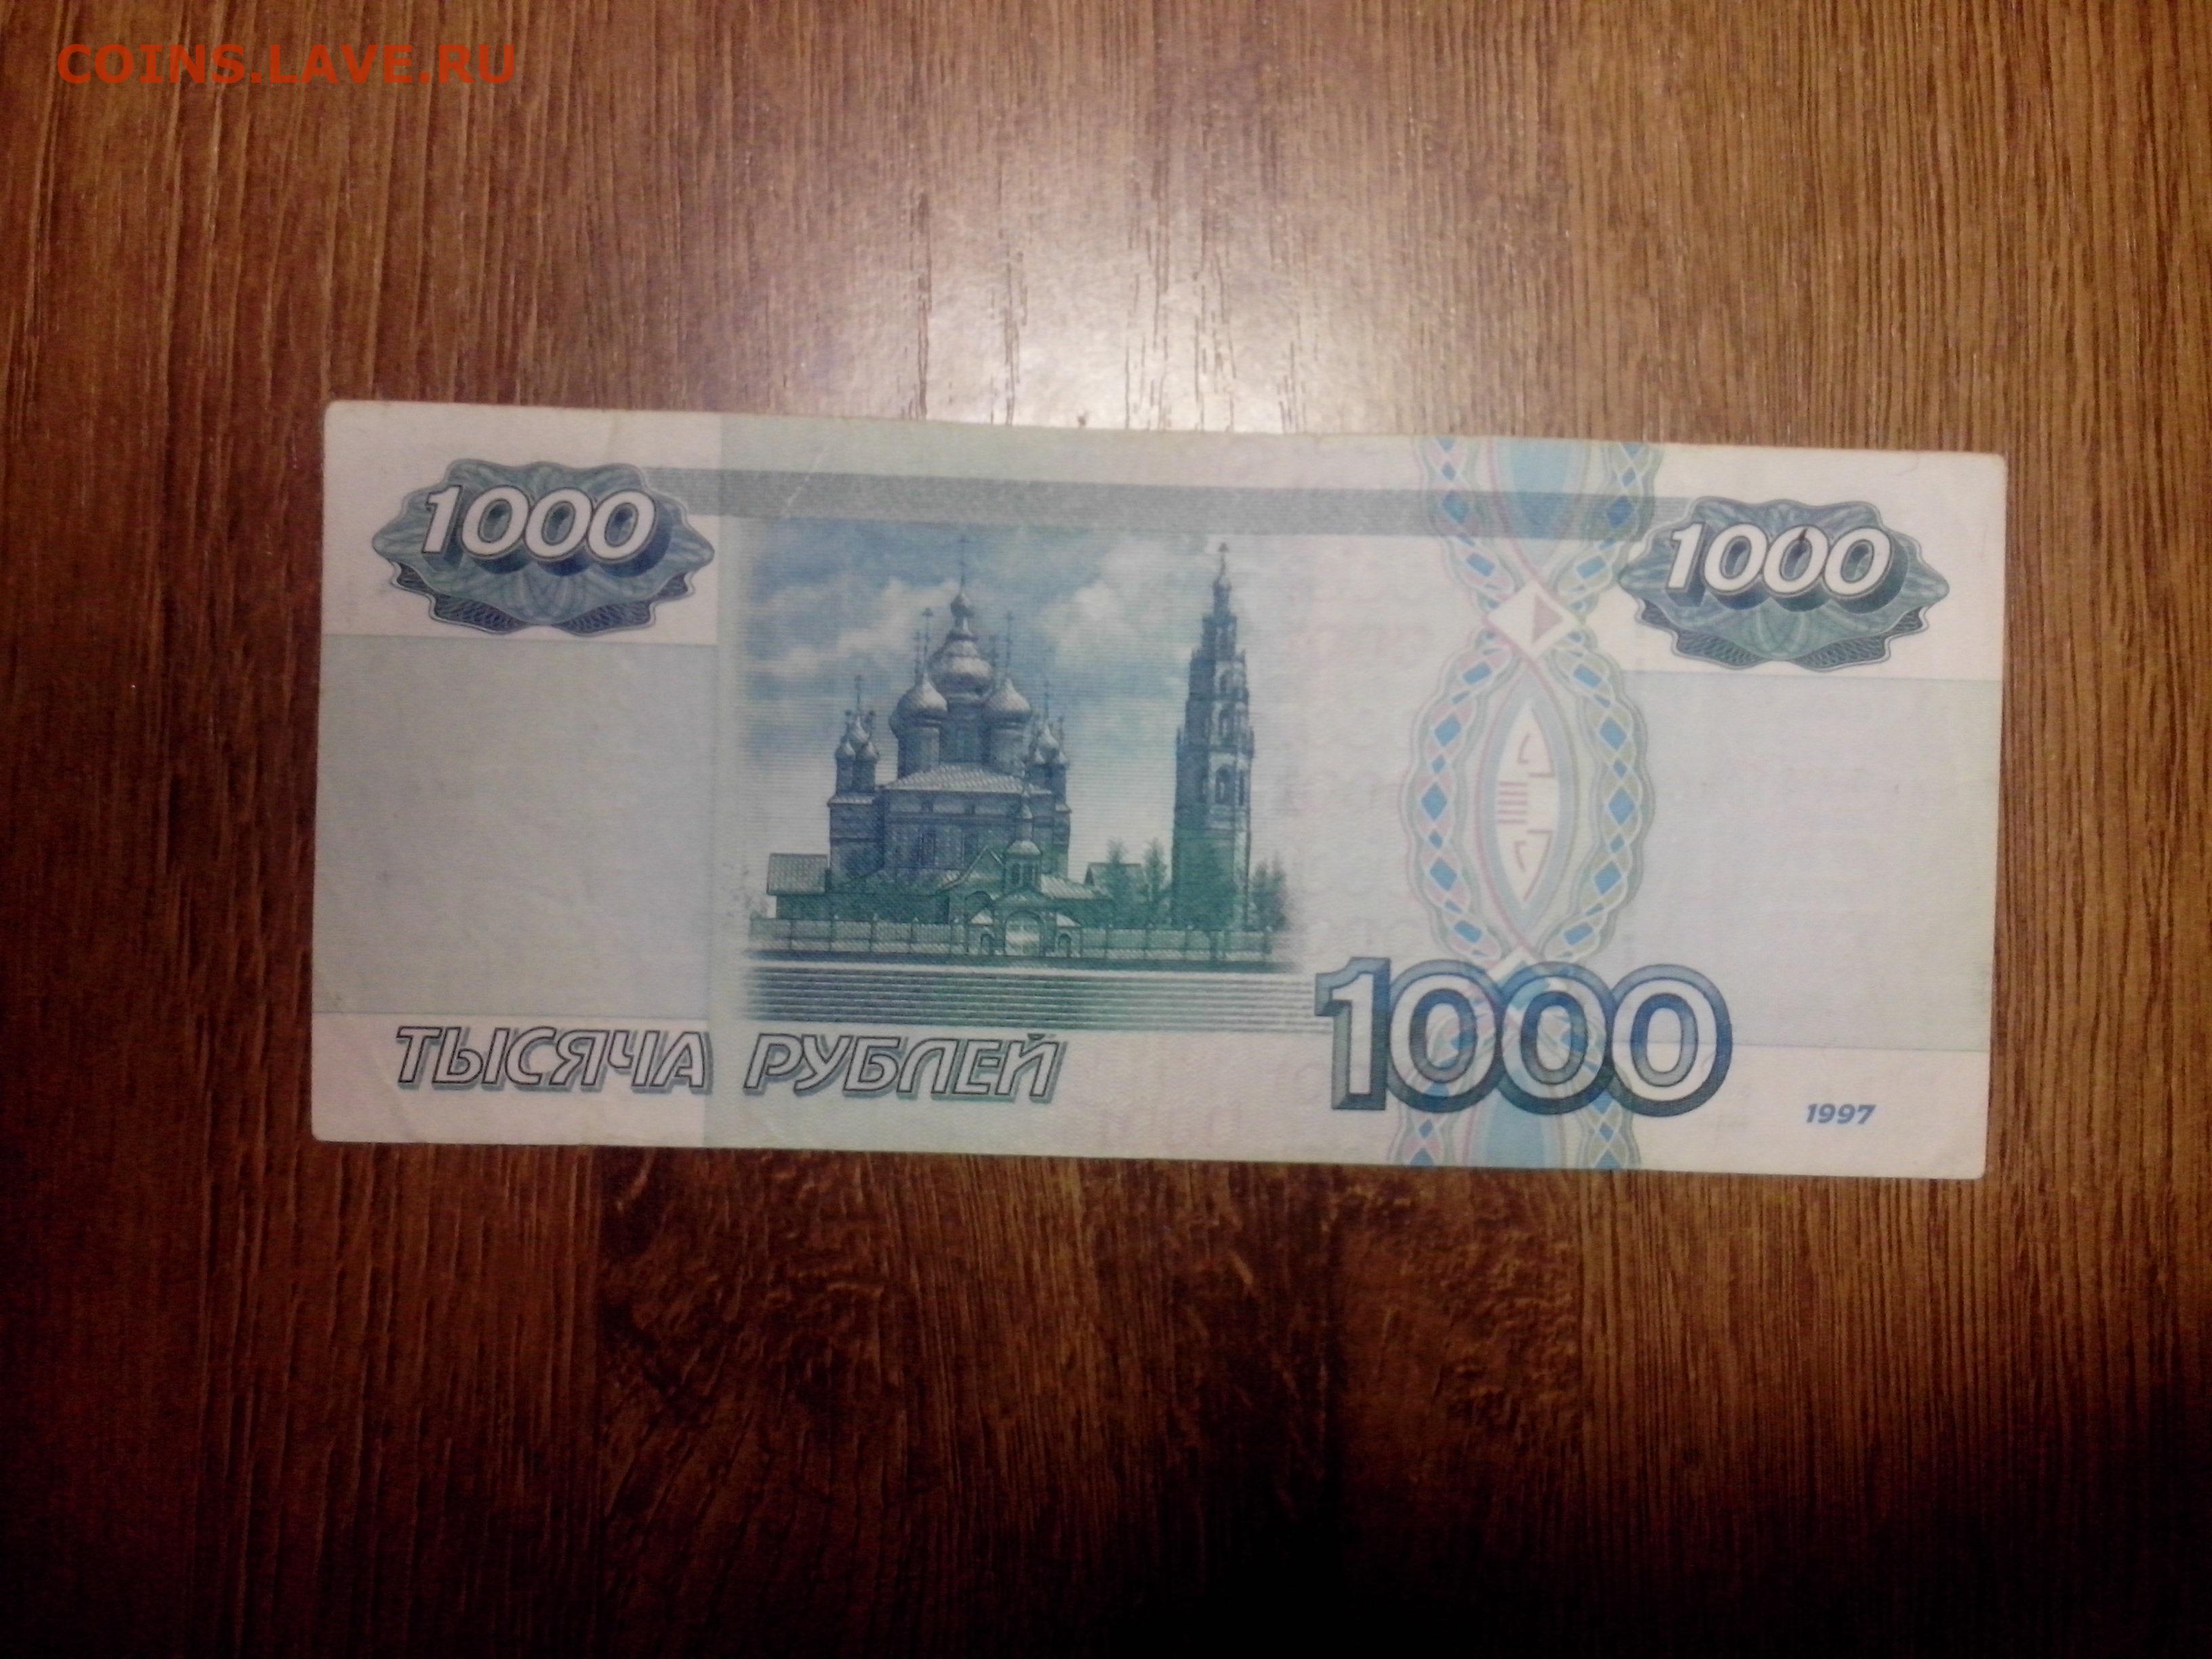 1000 рублей плюс 1000 рублей. 1000 Рублей. 1000 Рублей на столе. 1000 Рублей раньше. 1000 Тысяч рублей.